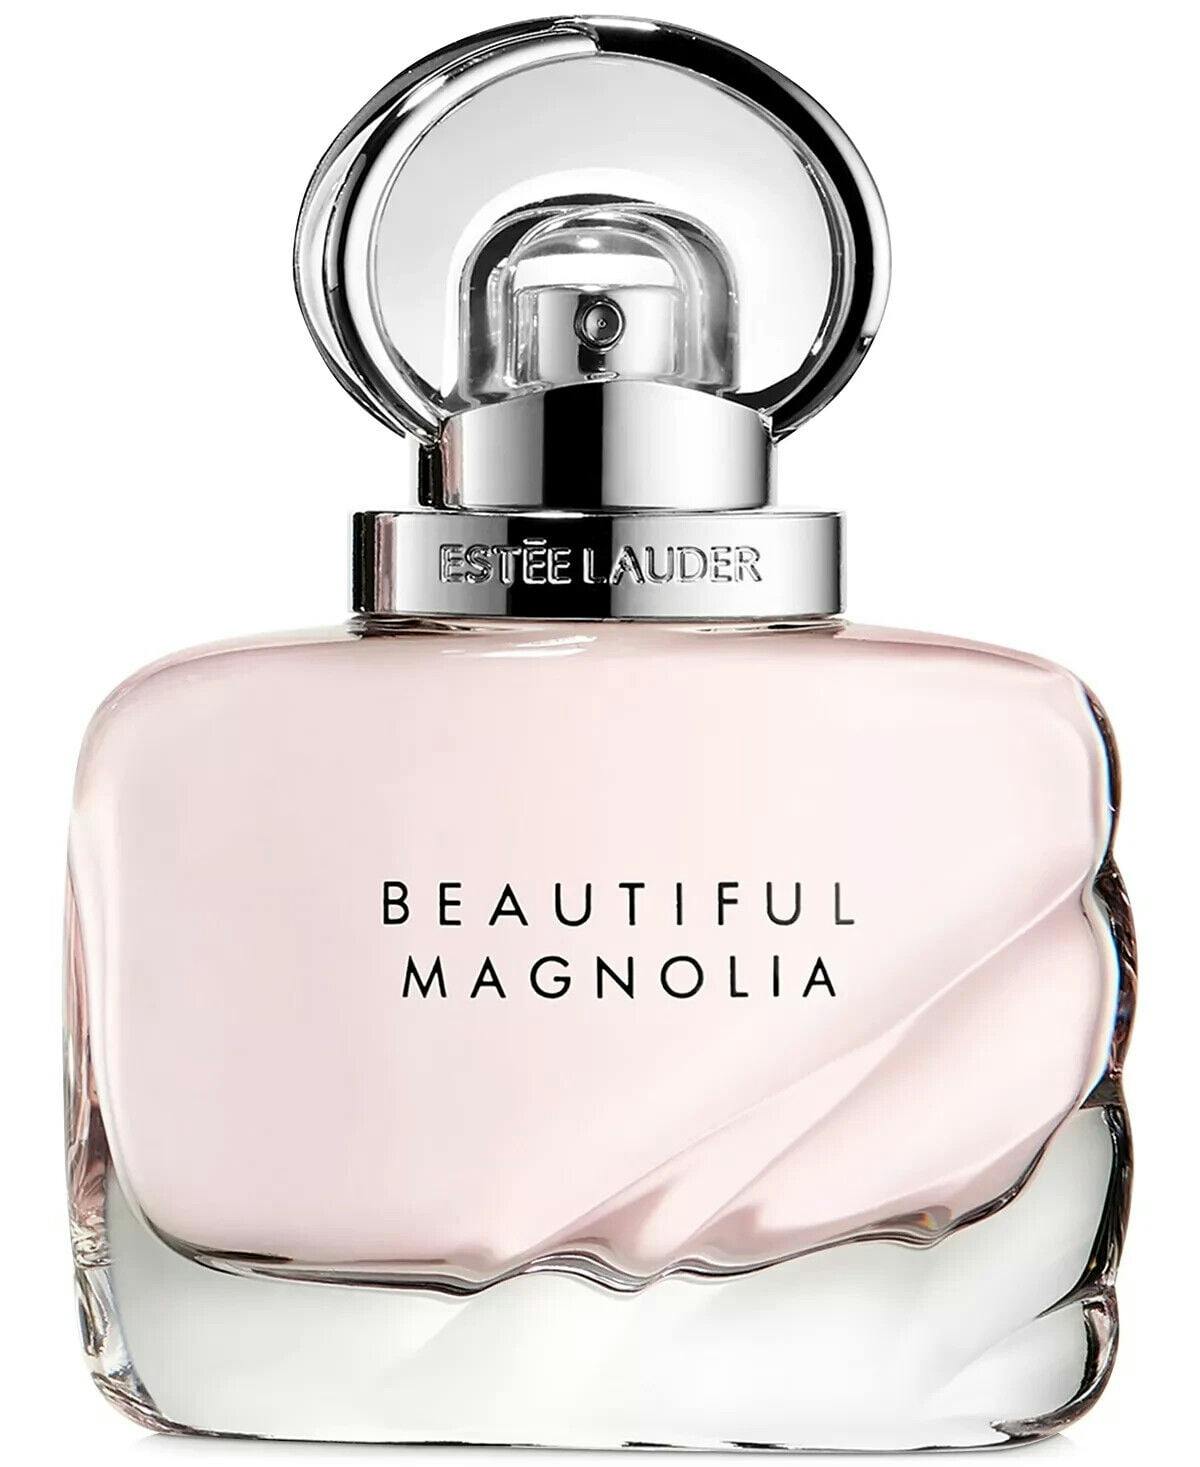 Estee Lauder Beautiful Magnolia 3.4 oz Eau de Parfum